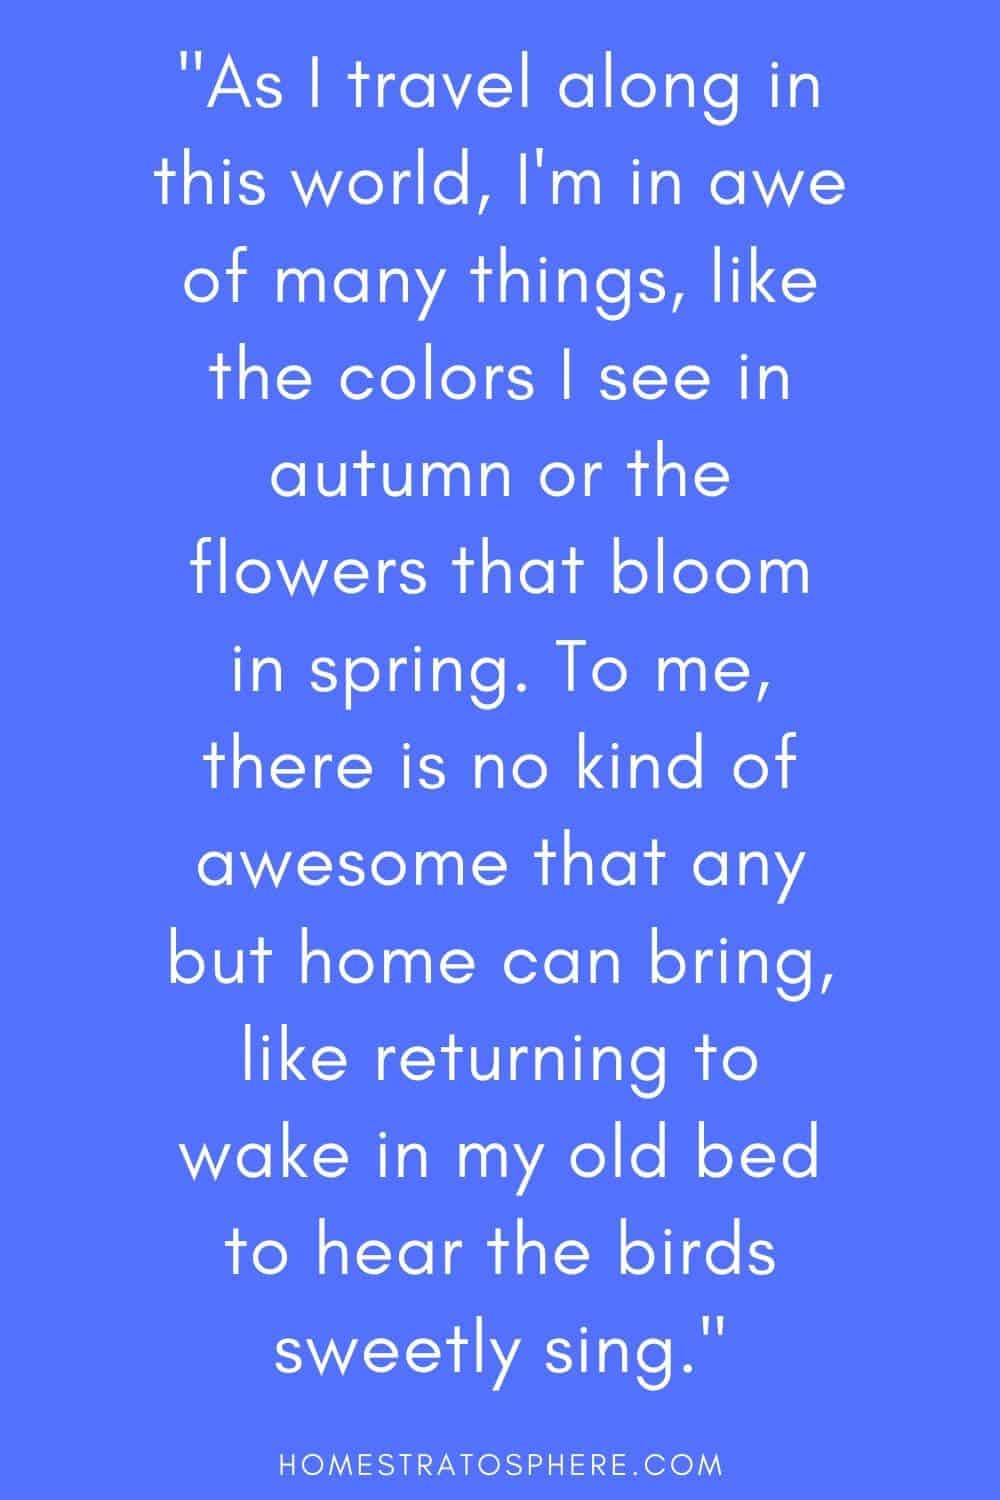 “当我在这个世界上旅行时，我对很多东西都感到敬畏，比如秋天看到的颜色，或者春天开放的花朵。对我来说，除了家，没有什么比回到我的旧床上醒来，听到鸟儿甜美的歌唱更棒的了。”